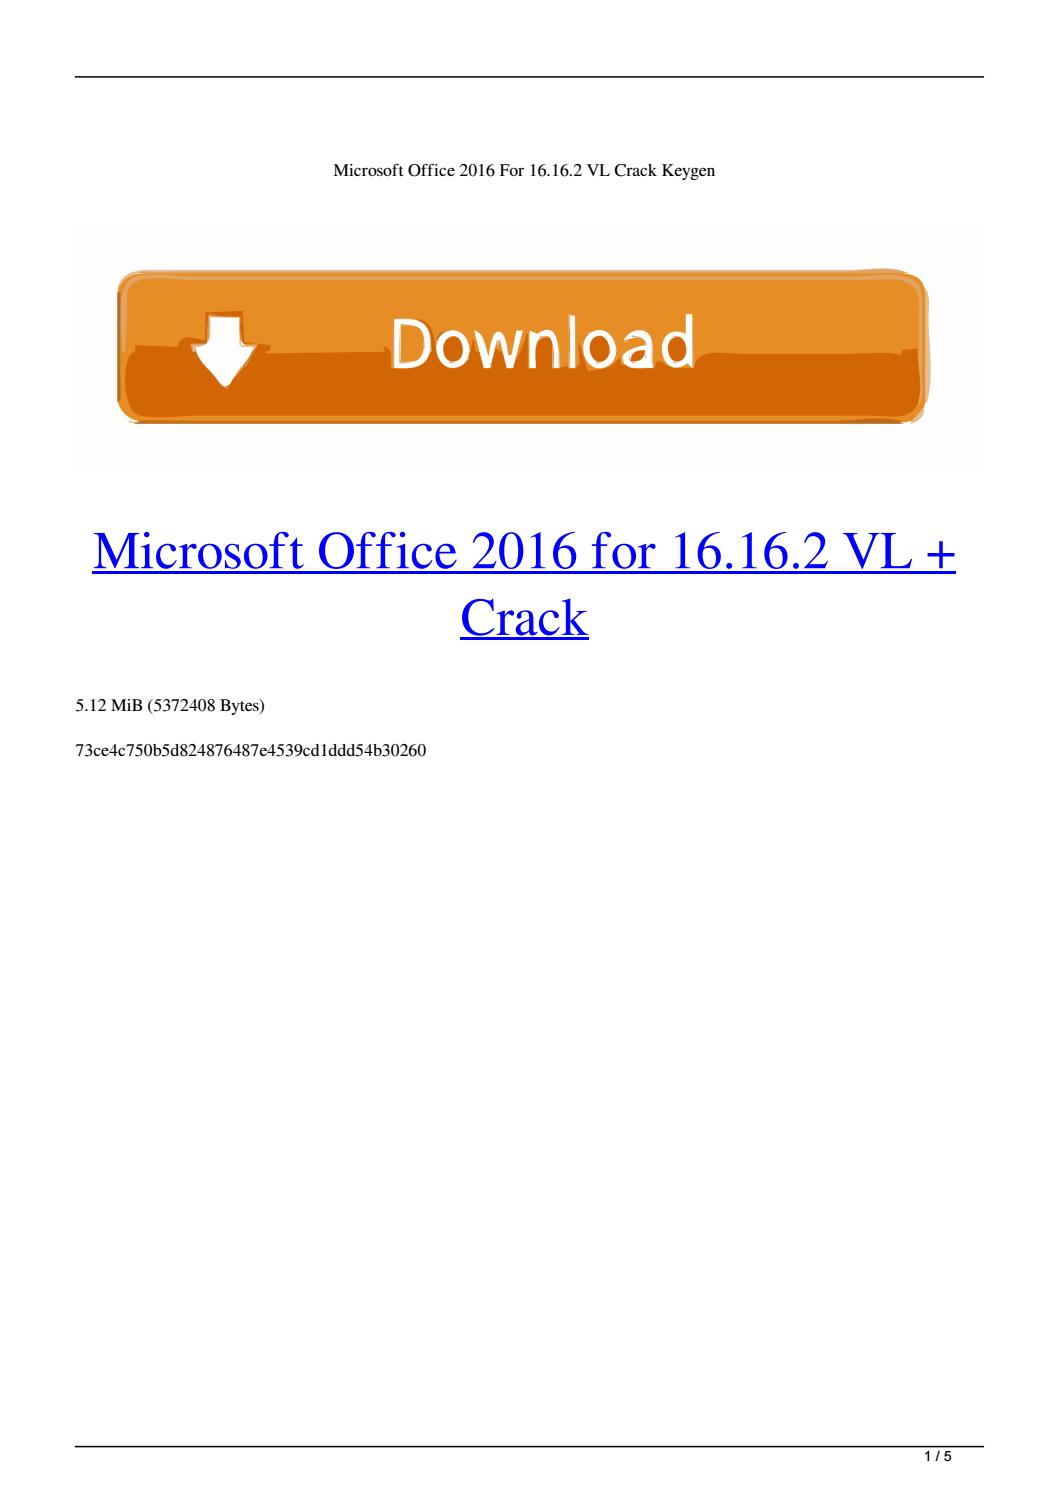 Office 2016 Keygen Download